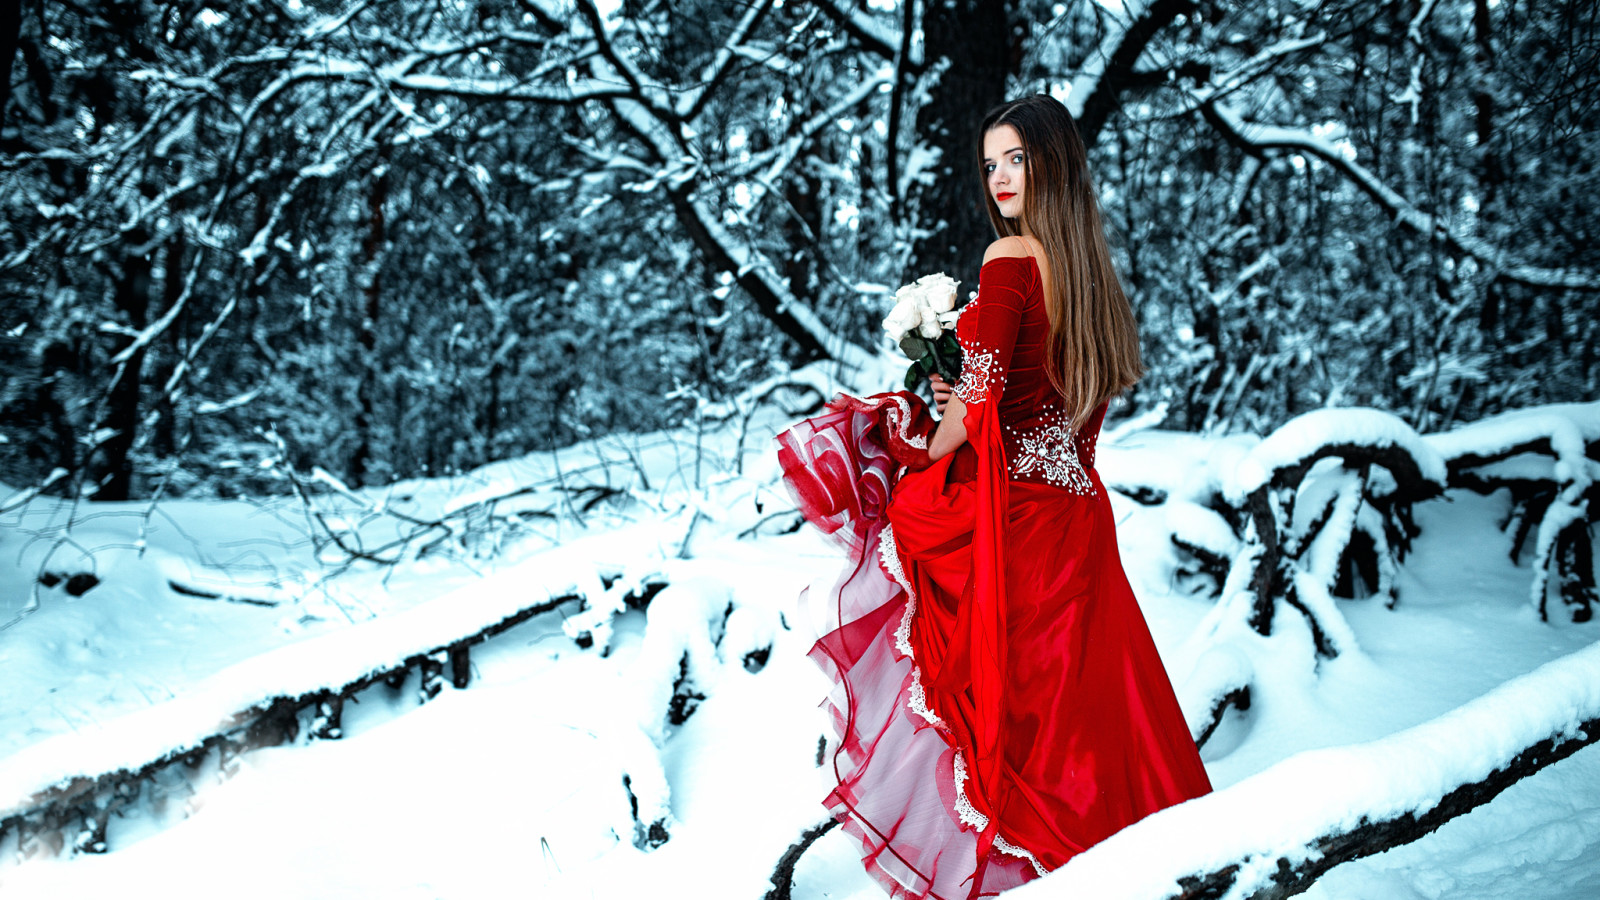 tuyết, rừng, con gái, mùa đông, hoa hồng, bó hoa, trang phục, màu đỏ